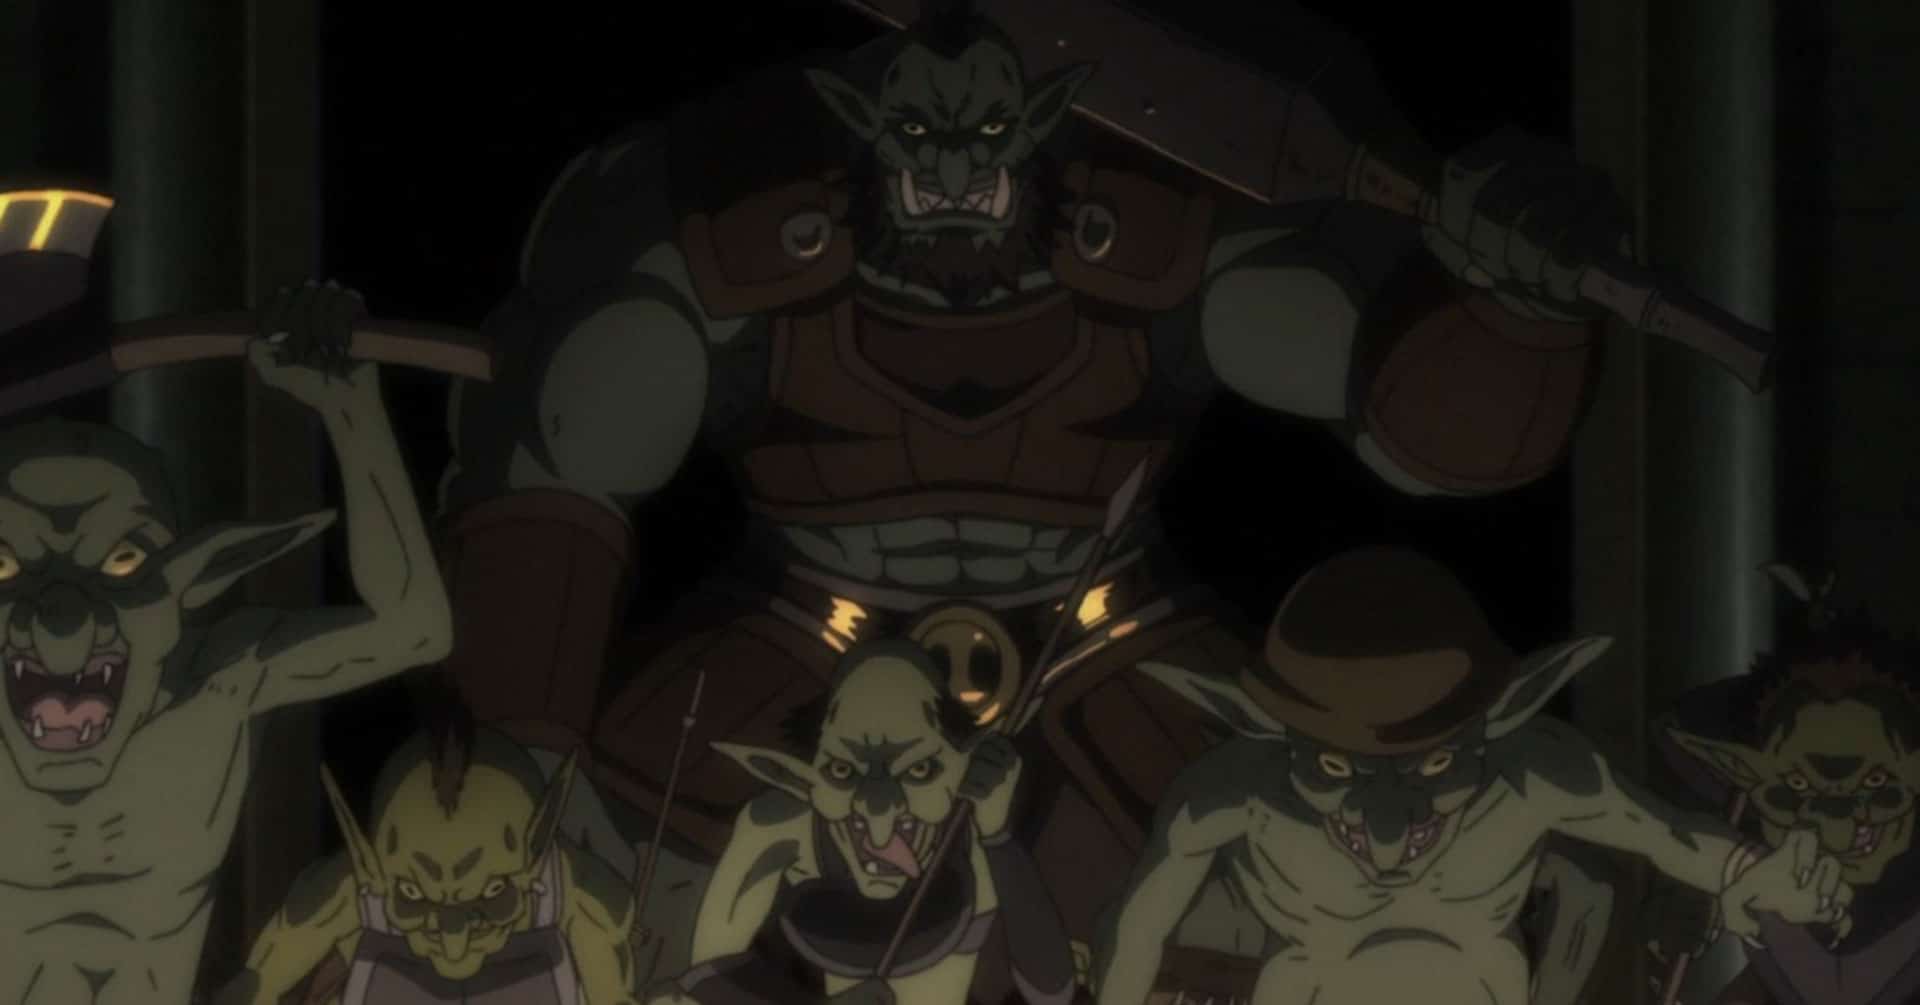 Seluruh Alur Cerita Anime Goblin Slayer Season 1 